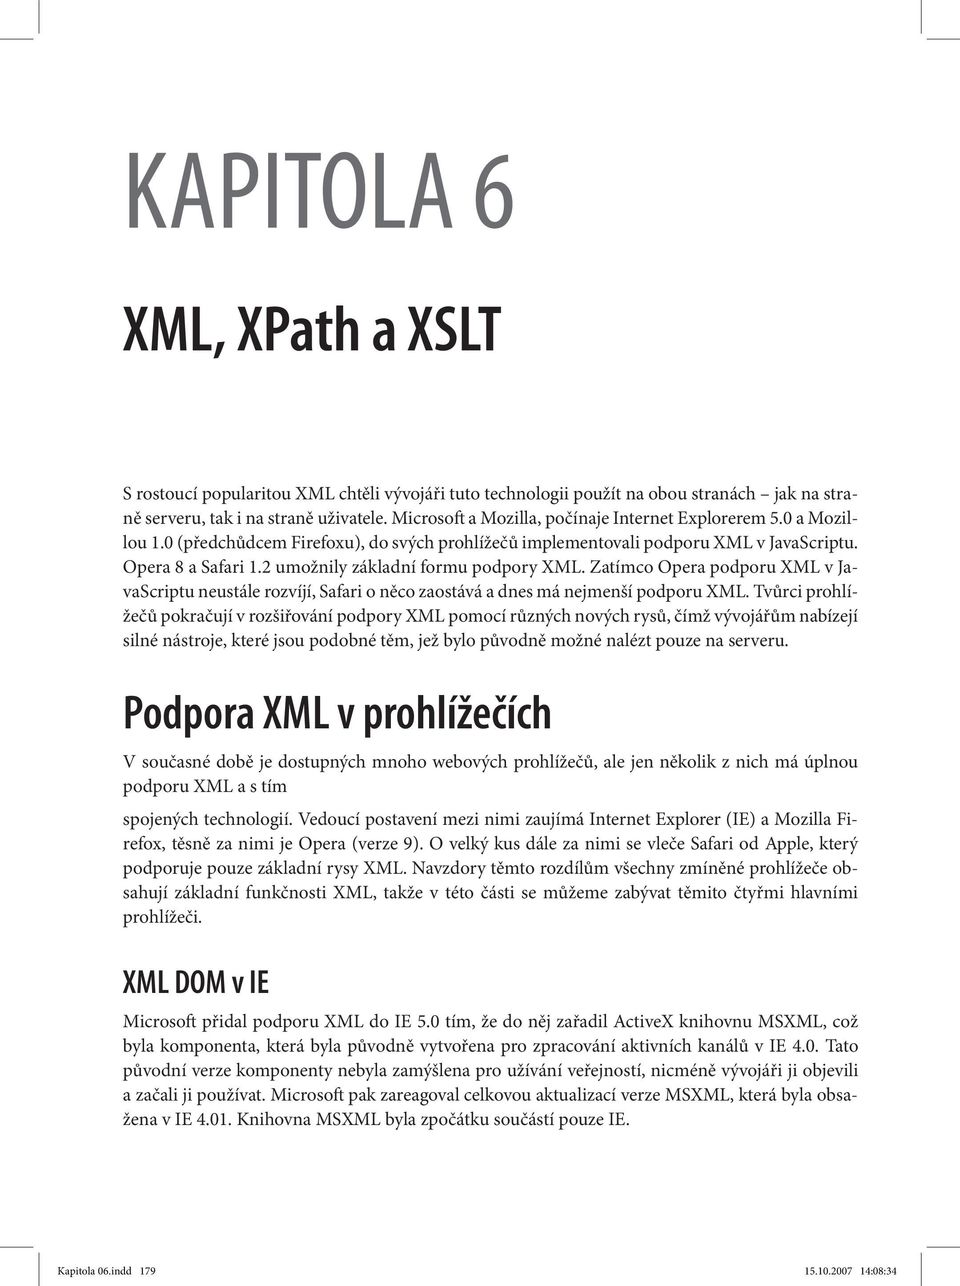 2 umožnily základní formu podpory XML. Zatímco Opera podporu XML v JavaScriptu neustále rozvíjí, Safari o něco zaostává a dnes má nejmenší podporu XML.